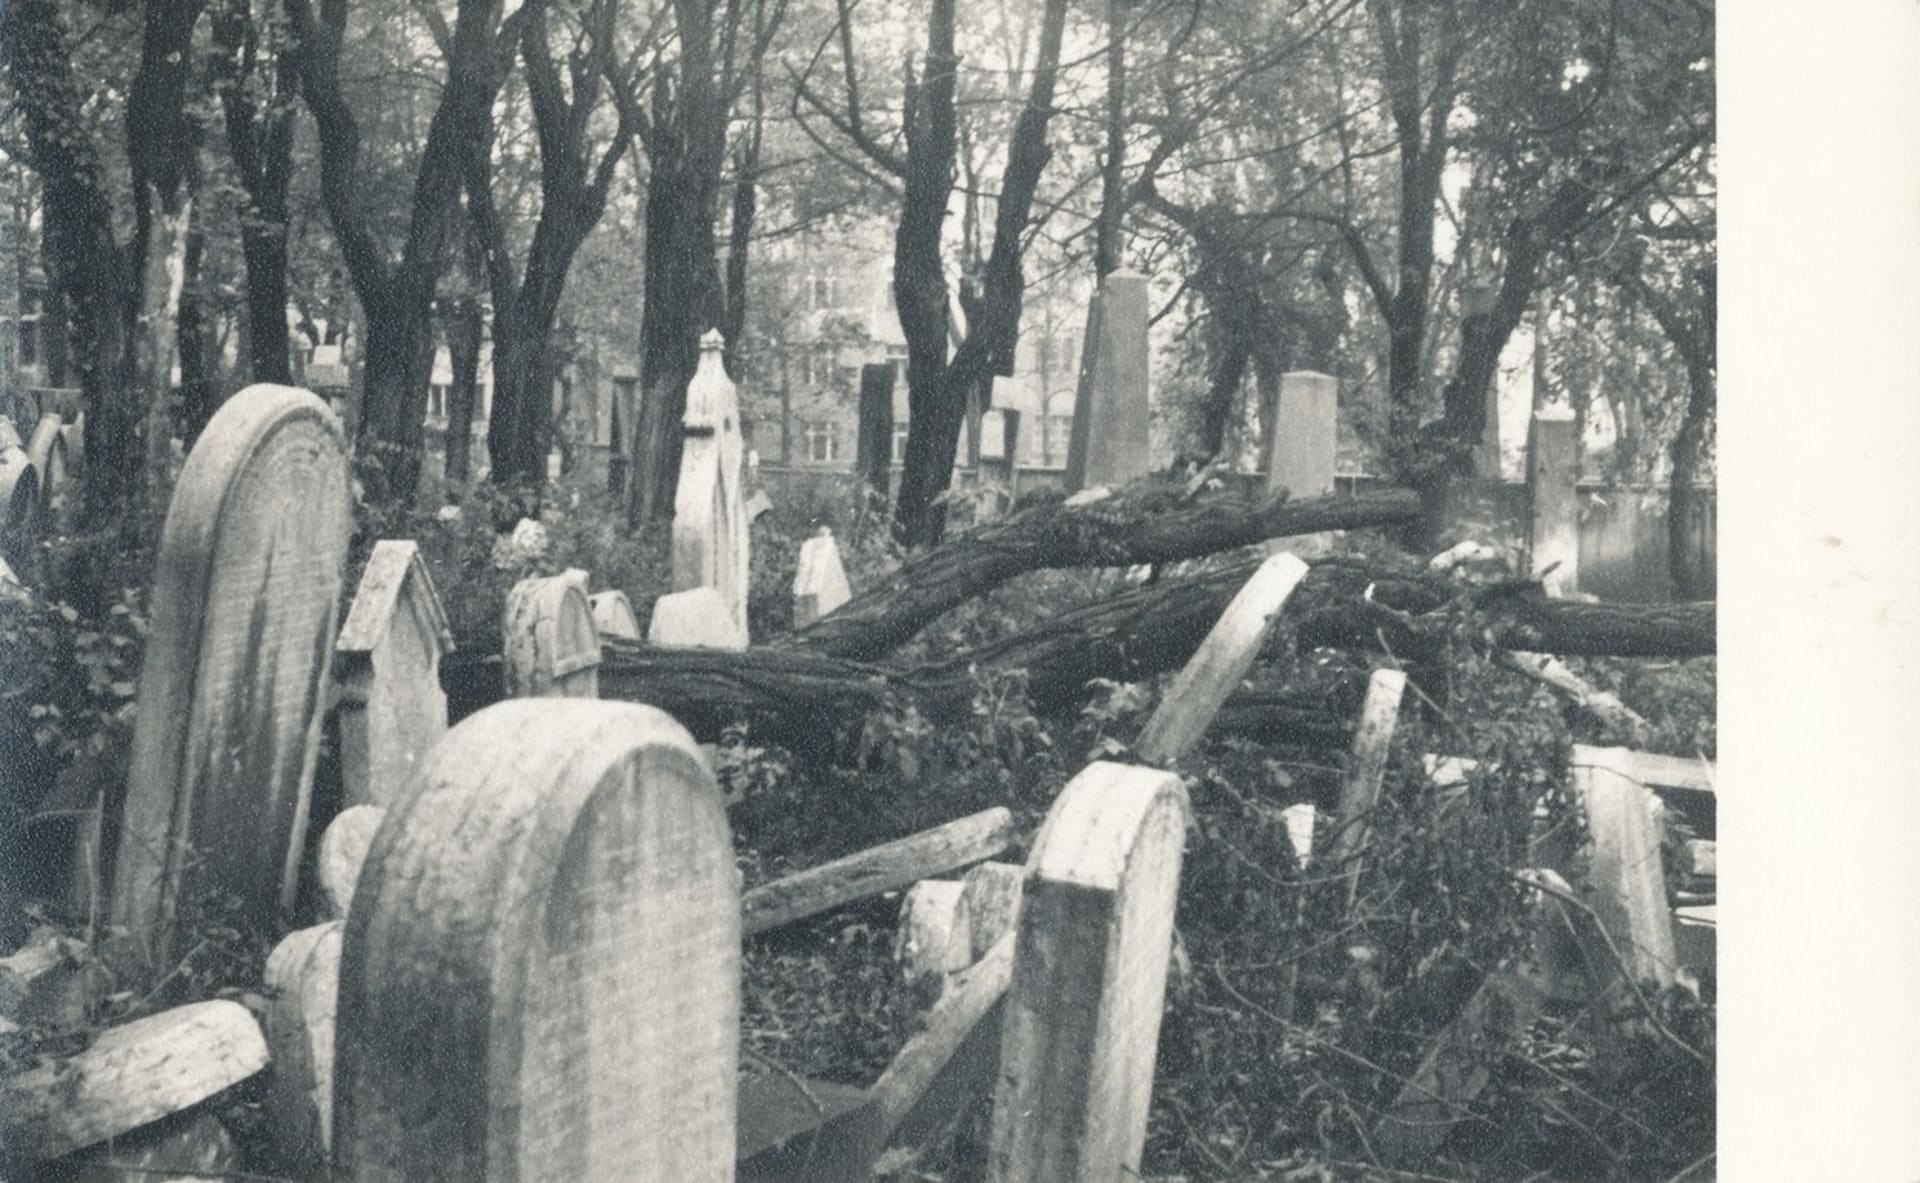 Žižkovský televizní vysílač stojí v parku na místě, kde býval židovský hřbitov